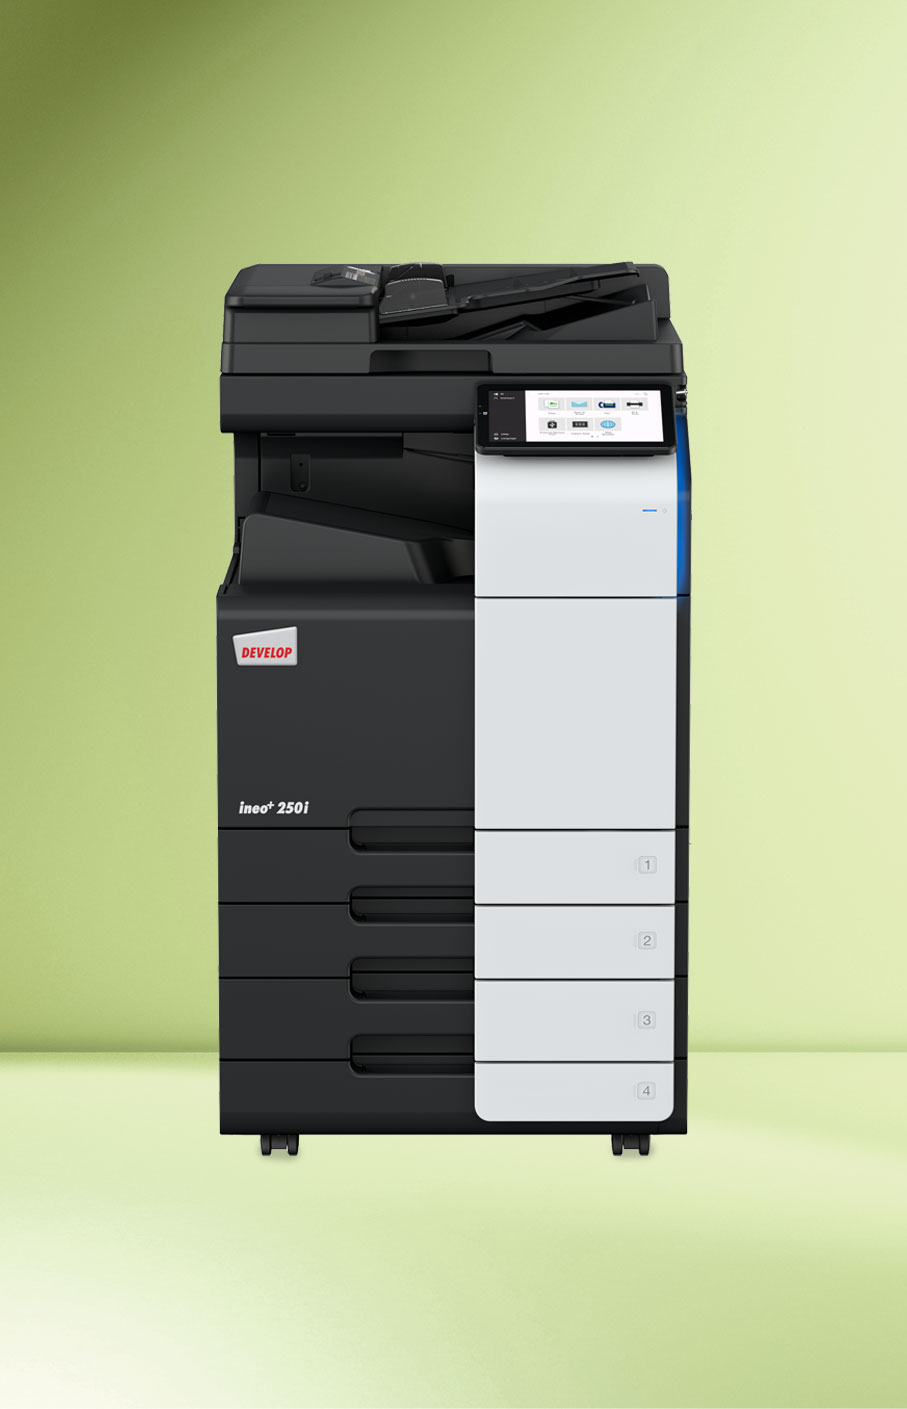 develop-ineo-250i-multifunktionsdrucker-fuer-scanning-farbdruck-und-schwarz-weiss-druck